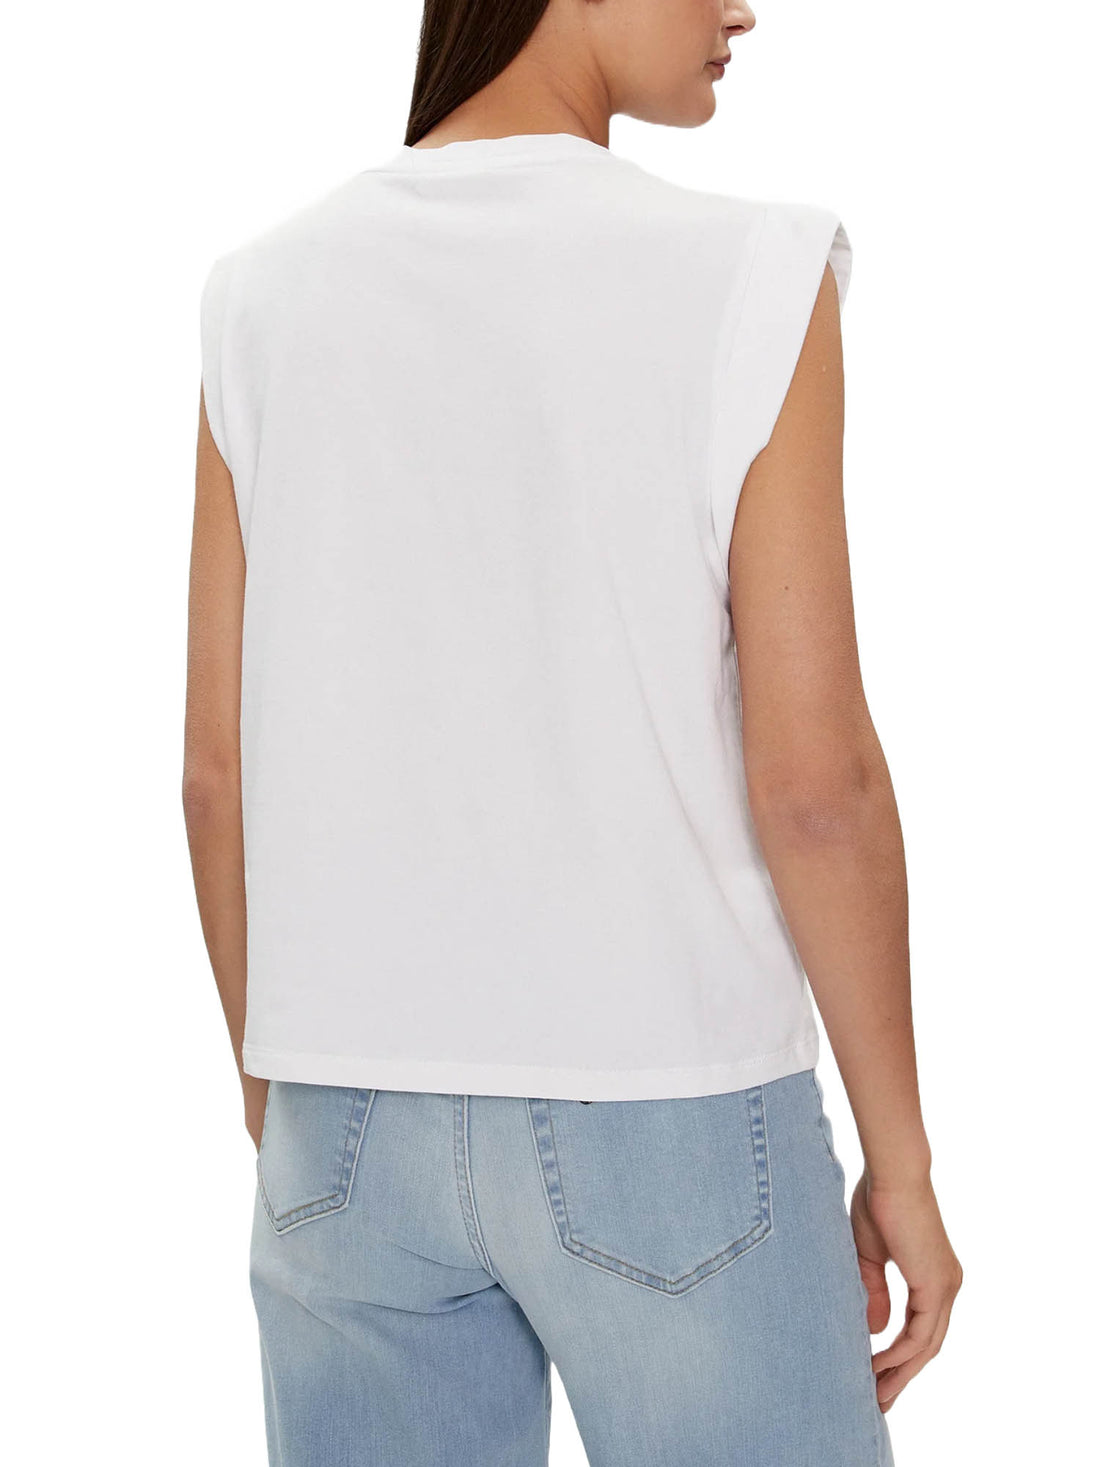 T-shirt Bianco Blu Liu-jo